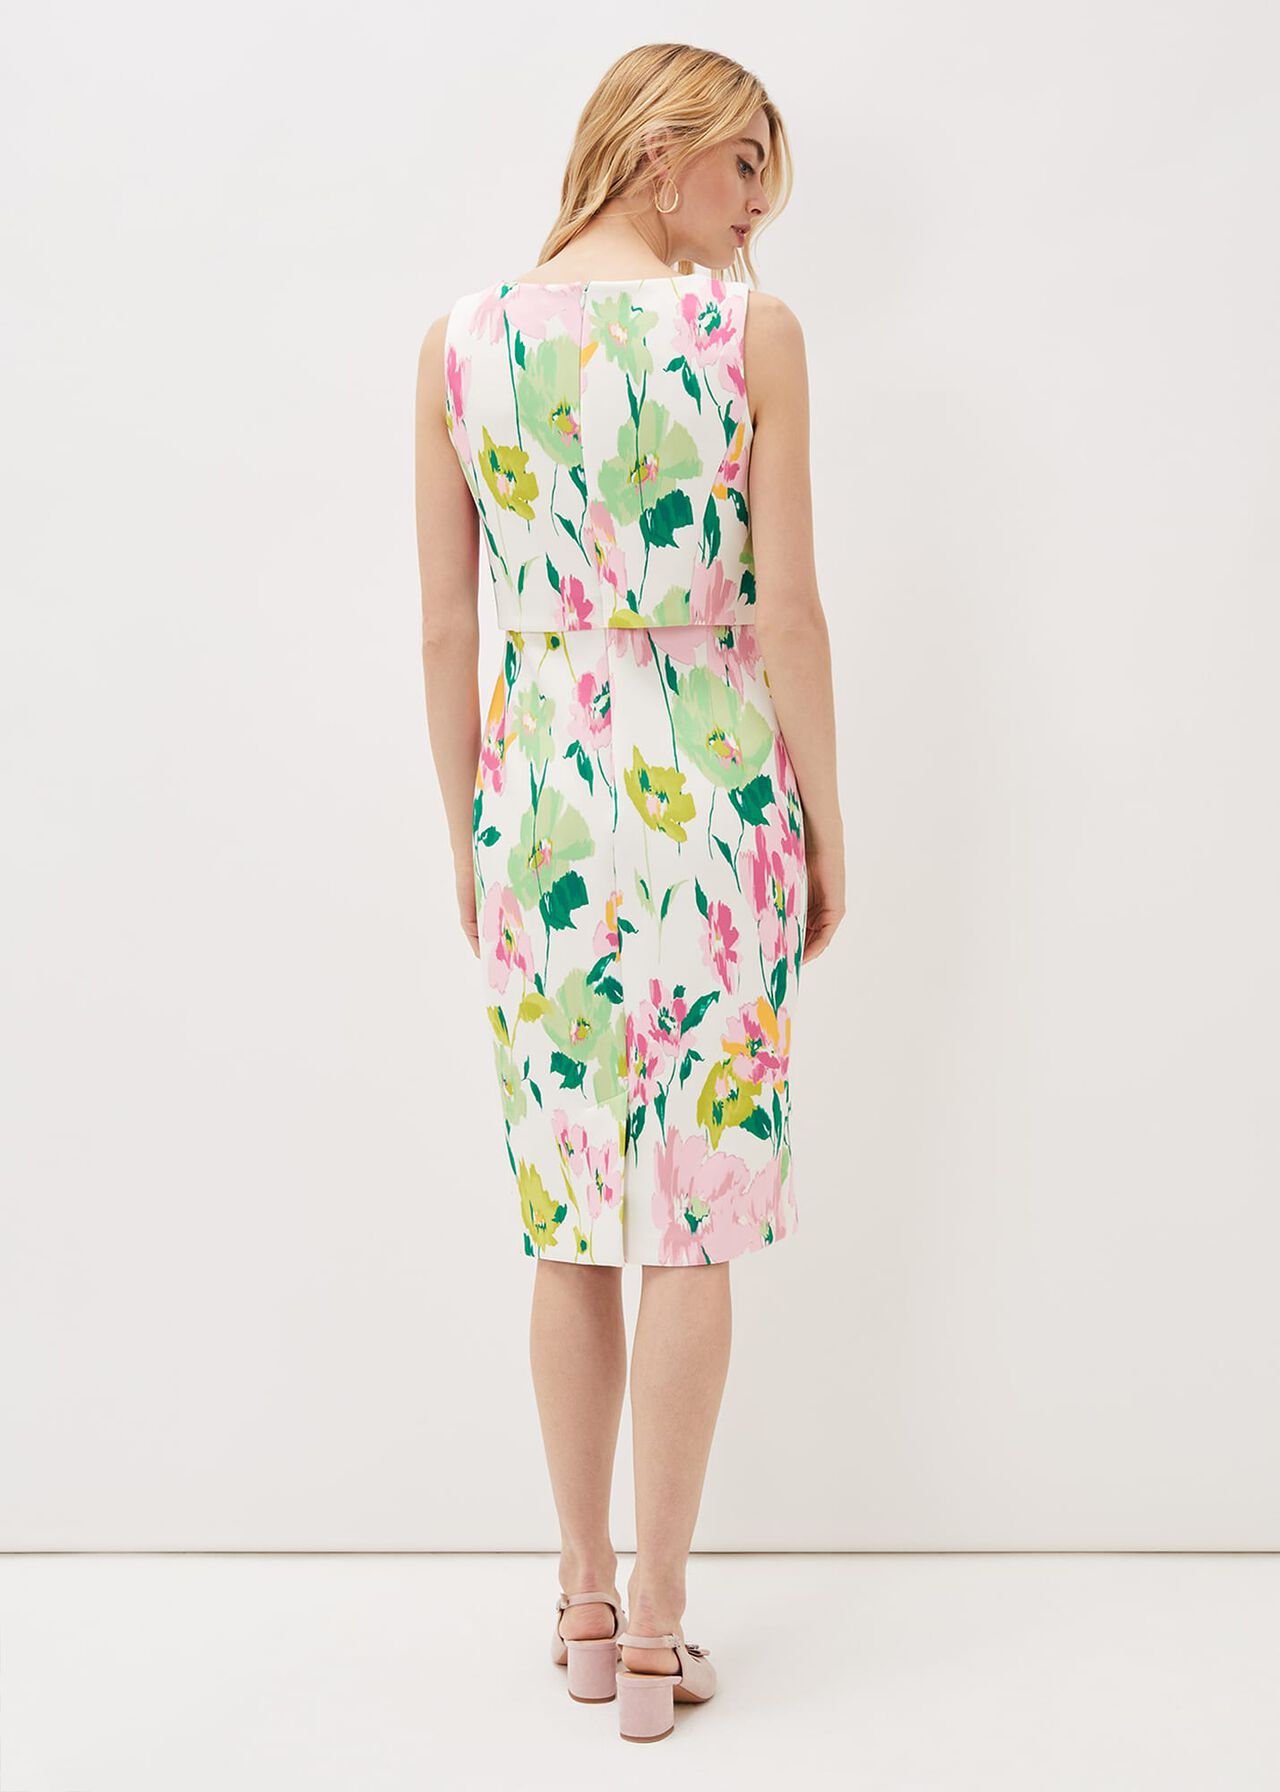 Effie Floral Scuba Dress